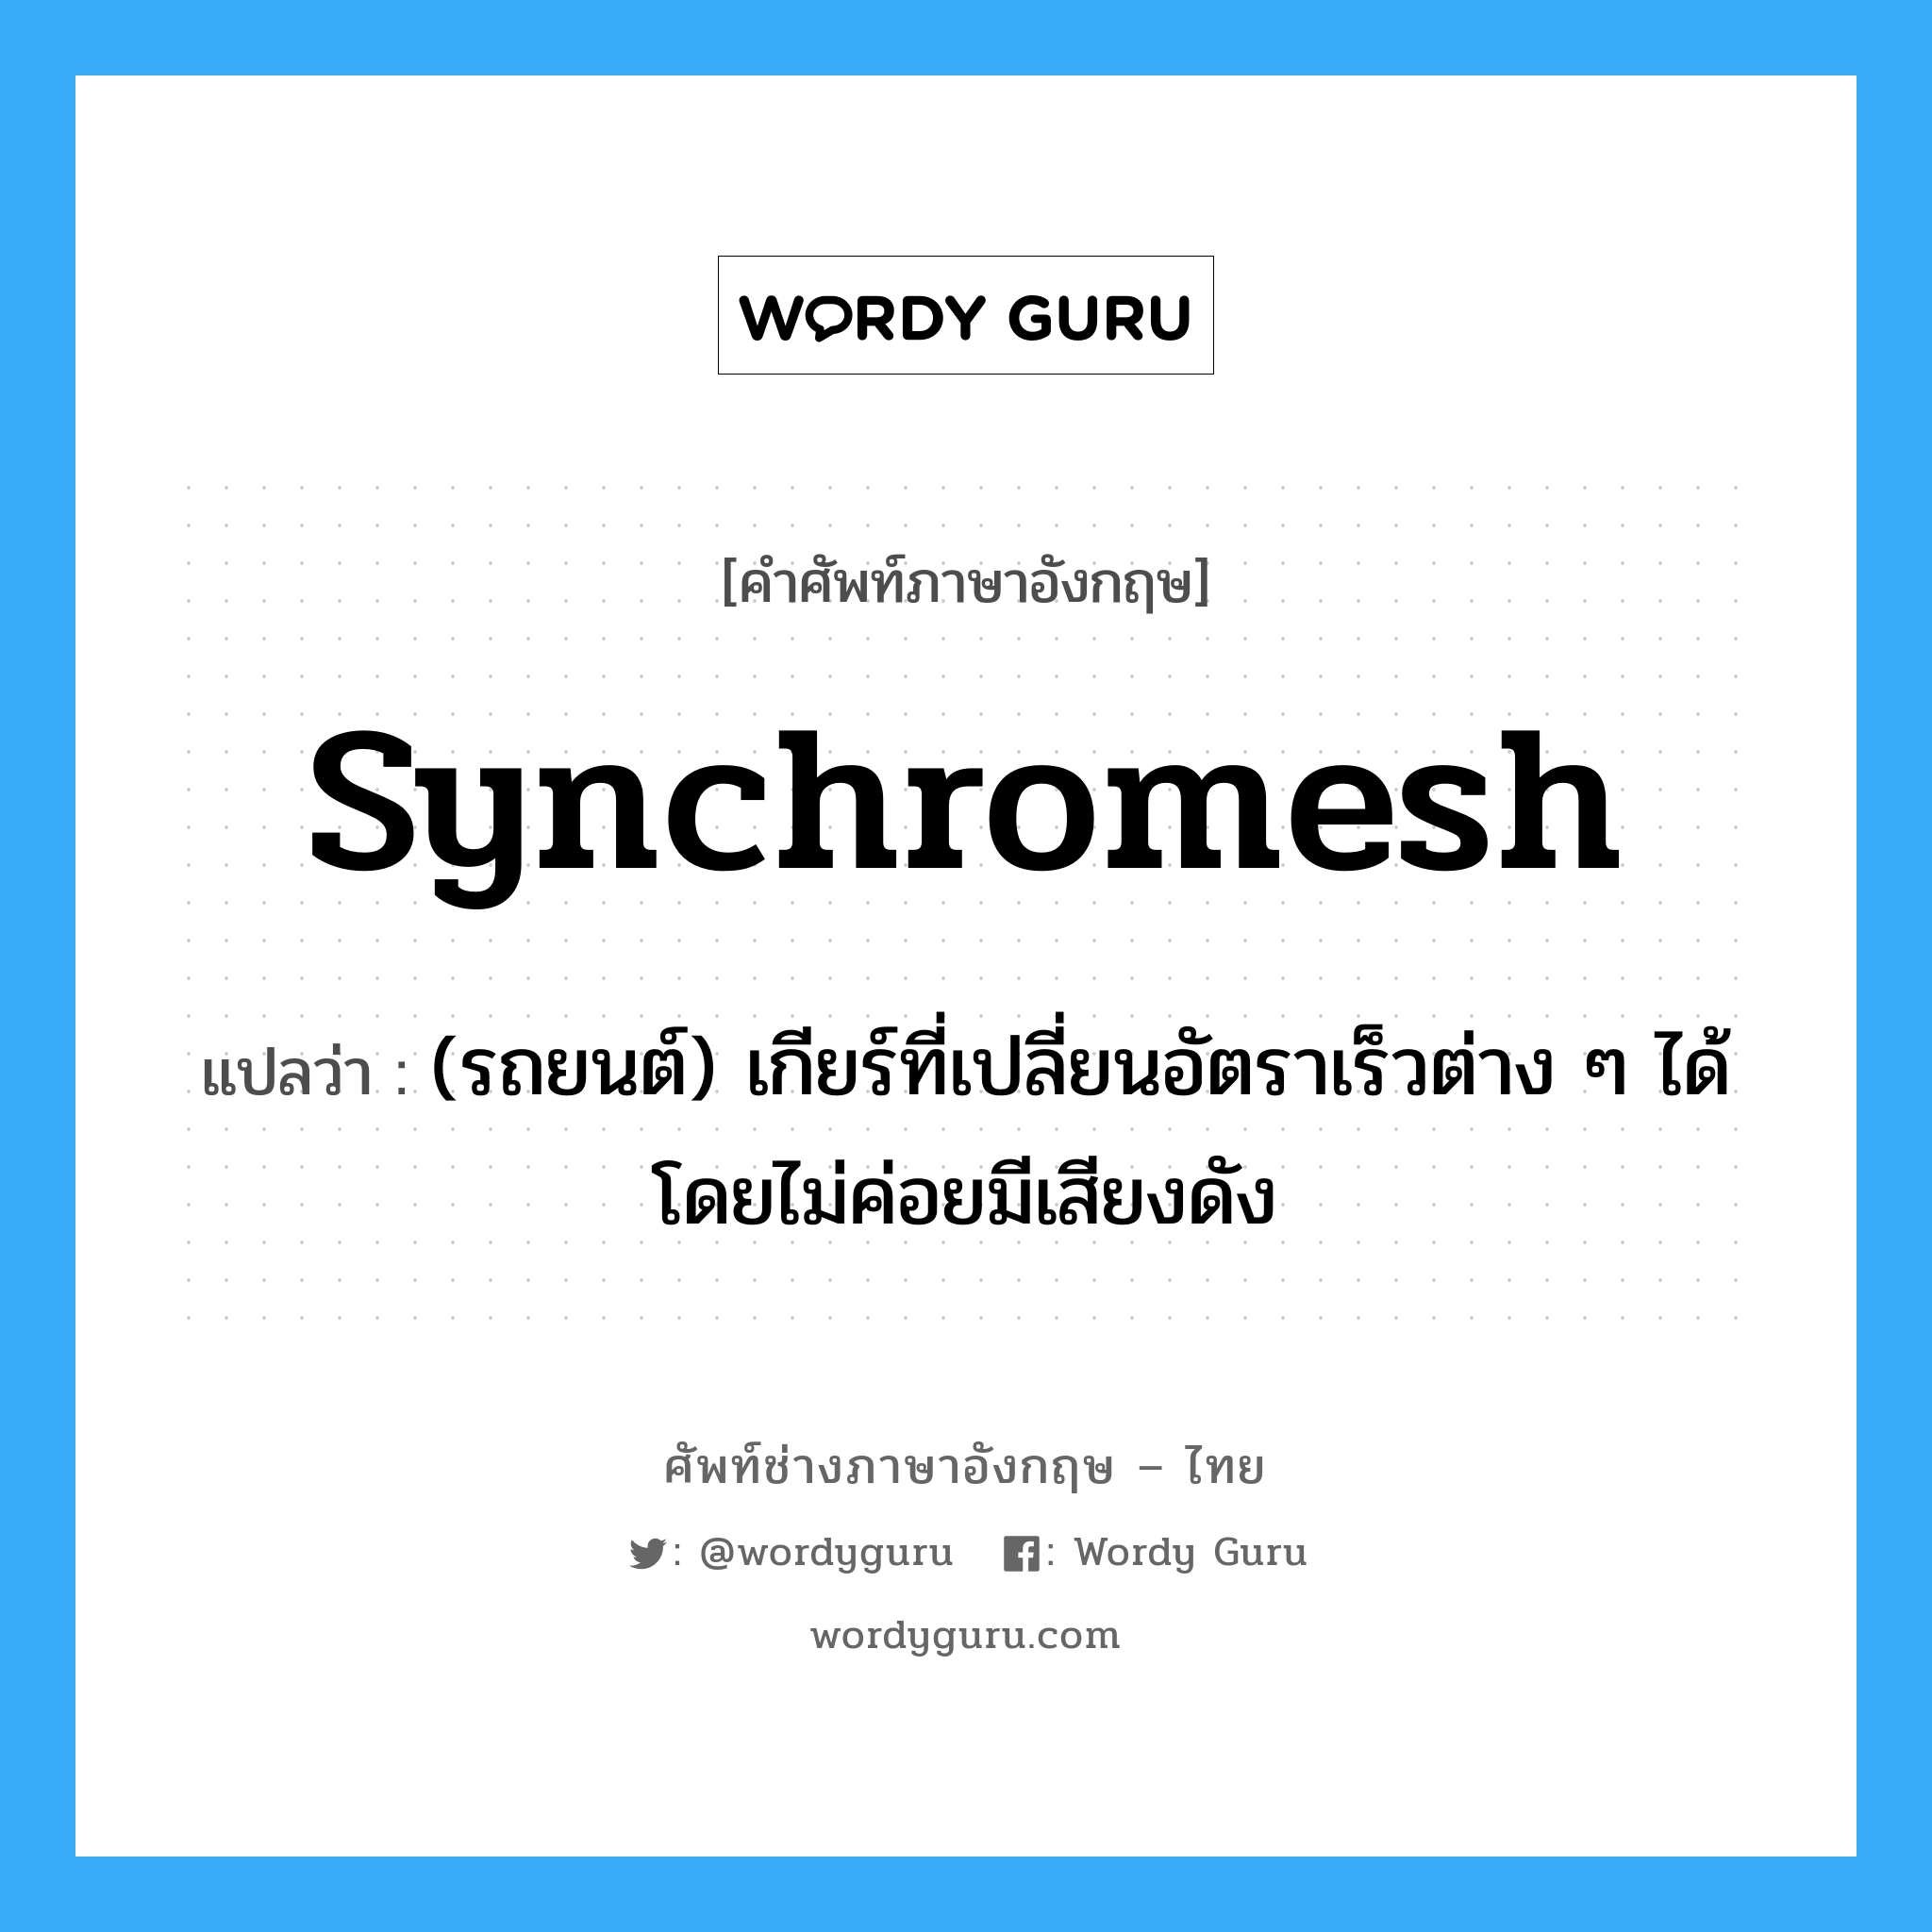 synchromesh แปลว่า?, คำศัพท์ช่างภาษาอังกฤษ - ไทย synchromesh คำศัพท์ภาษาอังกฤษ synchromesh แปลว่า (รถยนต์) เกียร์ที่เปลี่ยนอัตราเร็วต่าง ๆ ได้โดยไม่ค่อยมีเสียงดัง